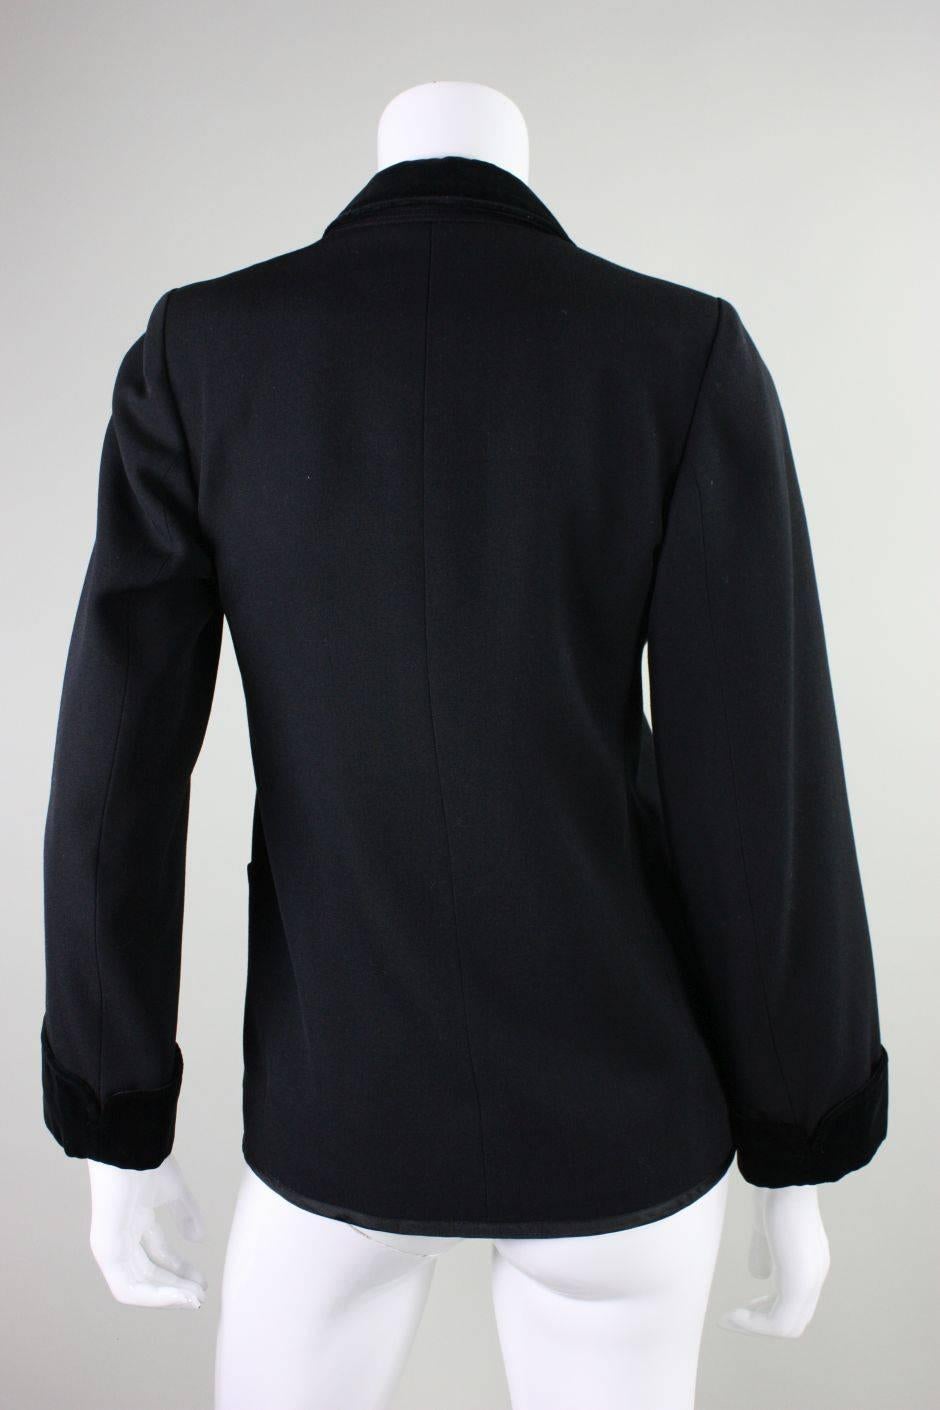 Women's 1970's Yves Saint Laurent Black Wool Tuxedo Jacket For Sale